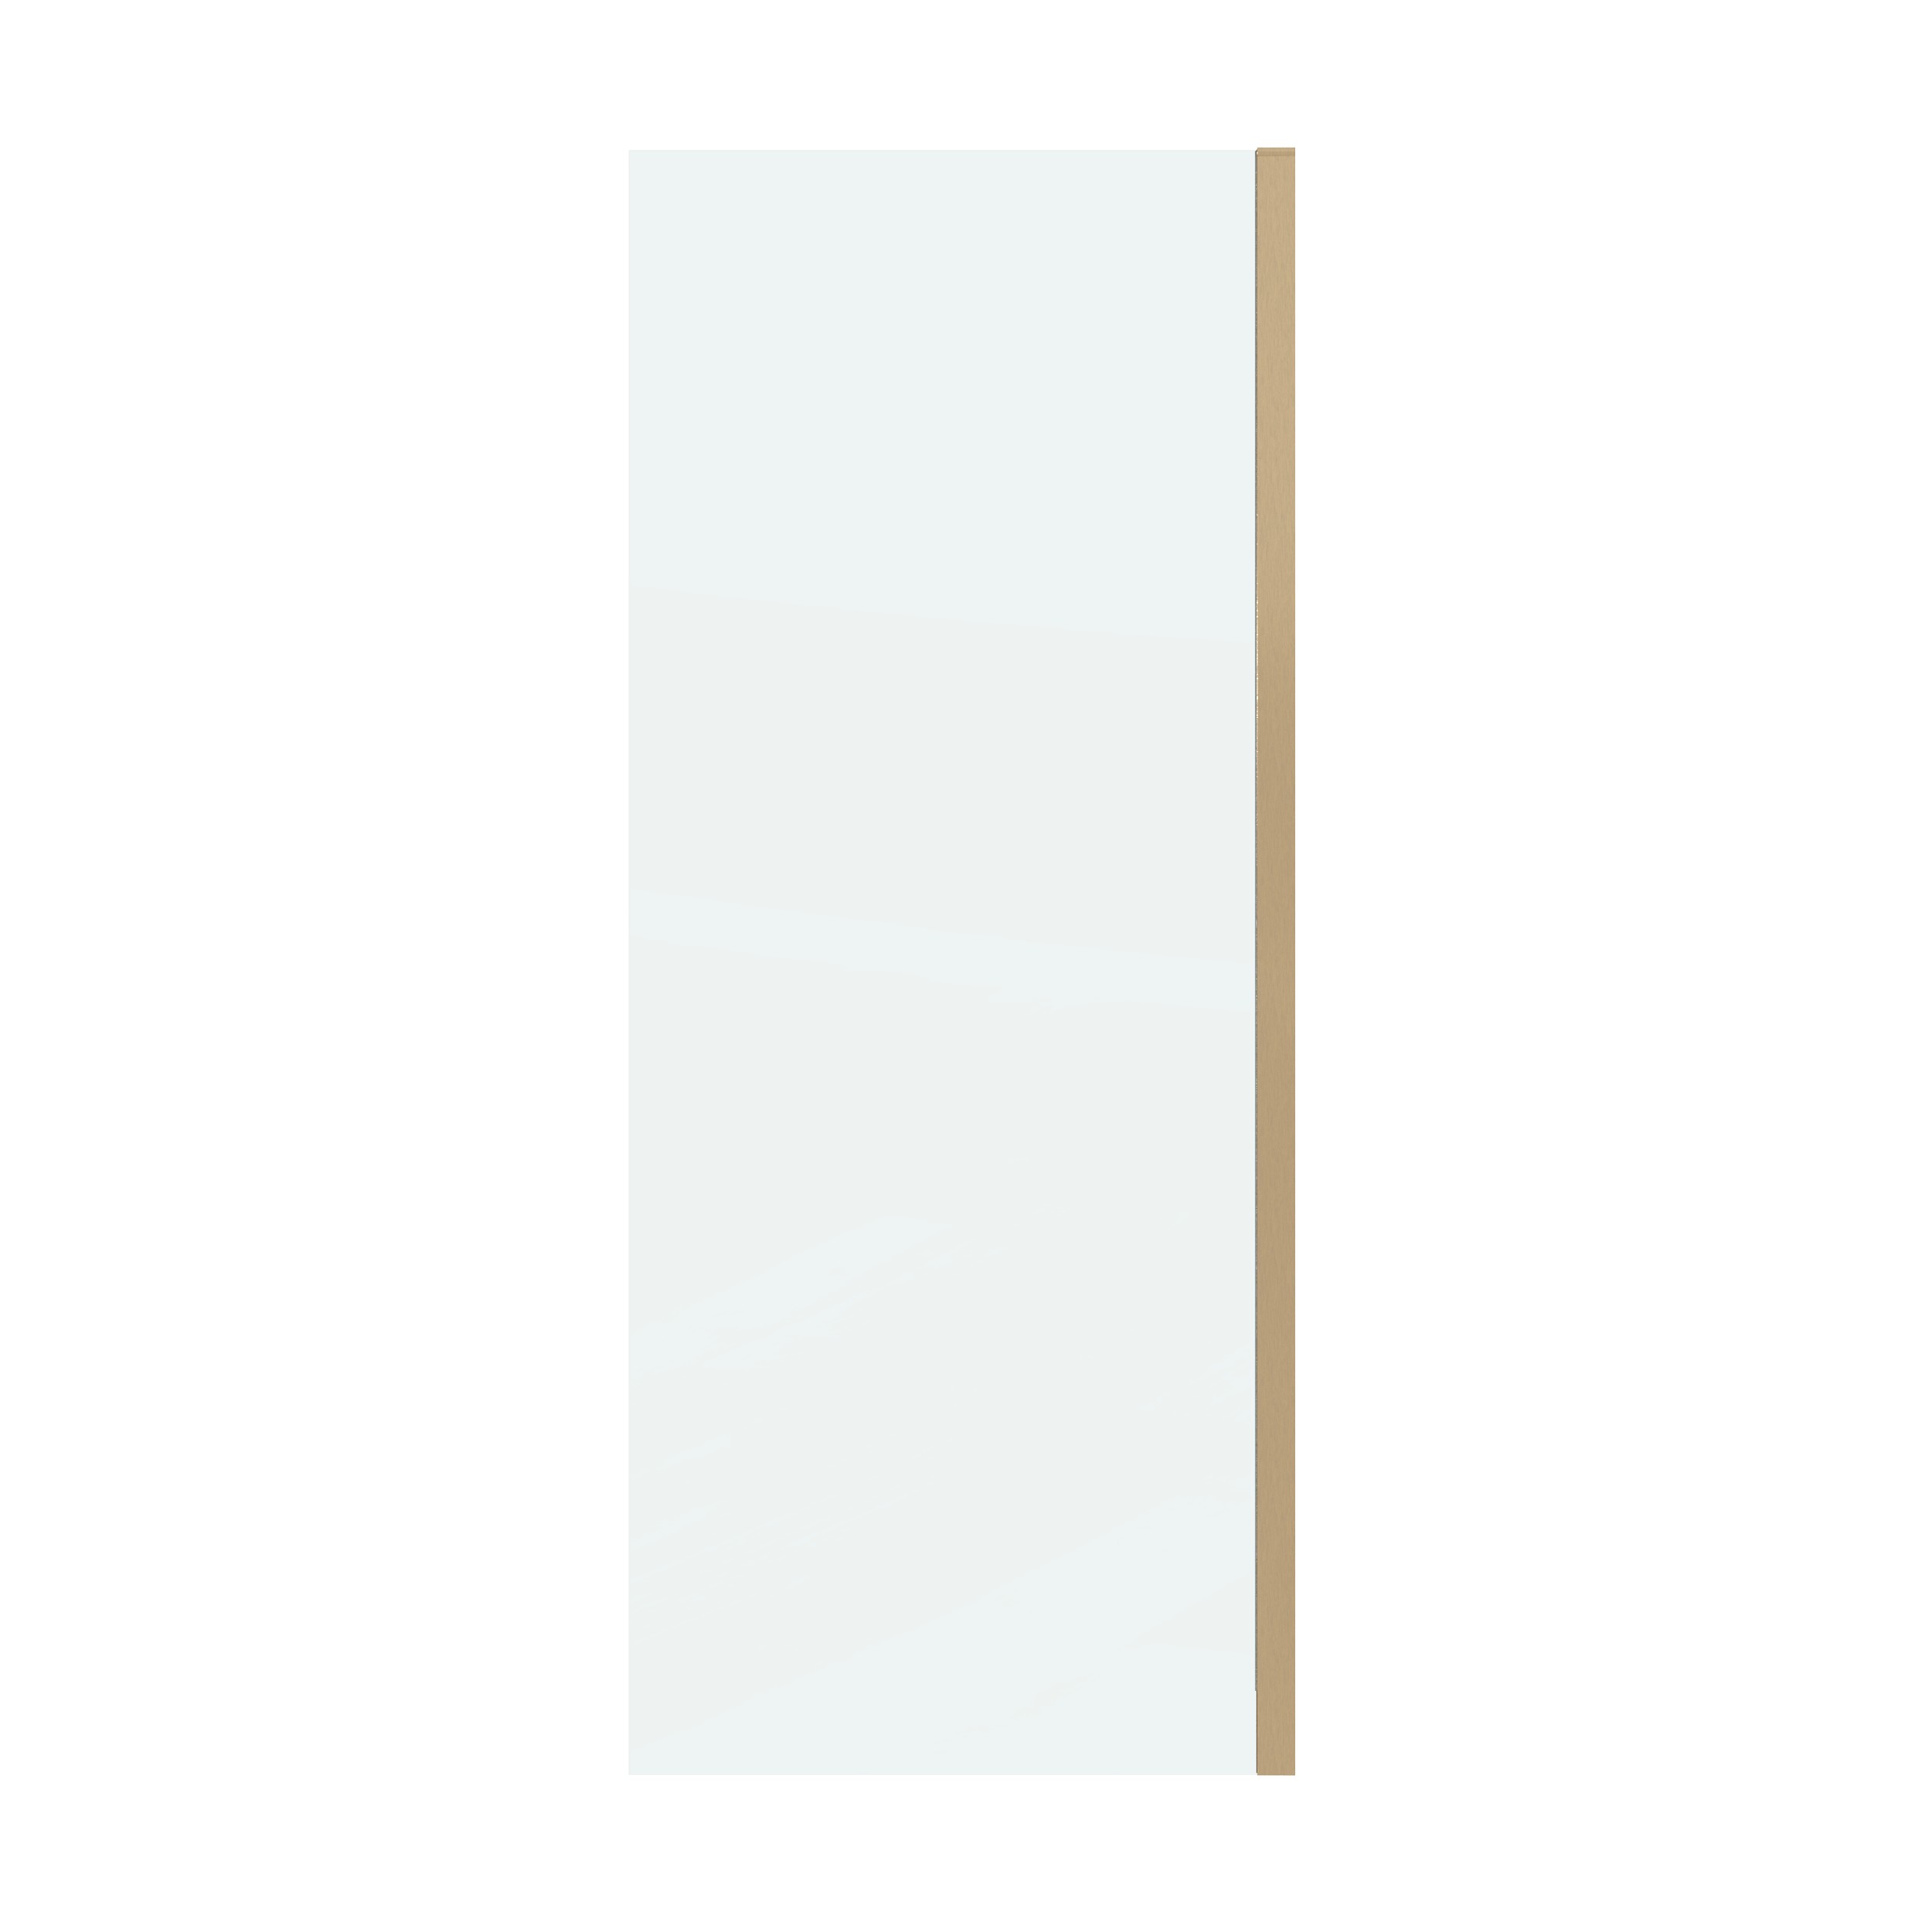 Боковая стенка Grossman Classic 80x195 200.K33.04.80.32.00 стекло прозрачное, профиль золото - фото 1